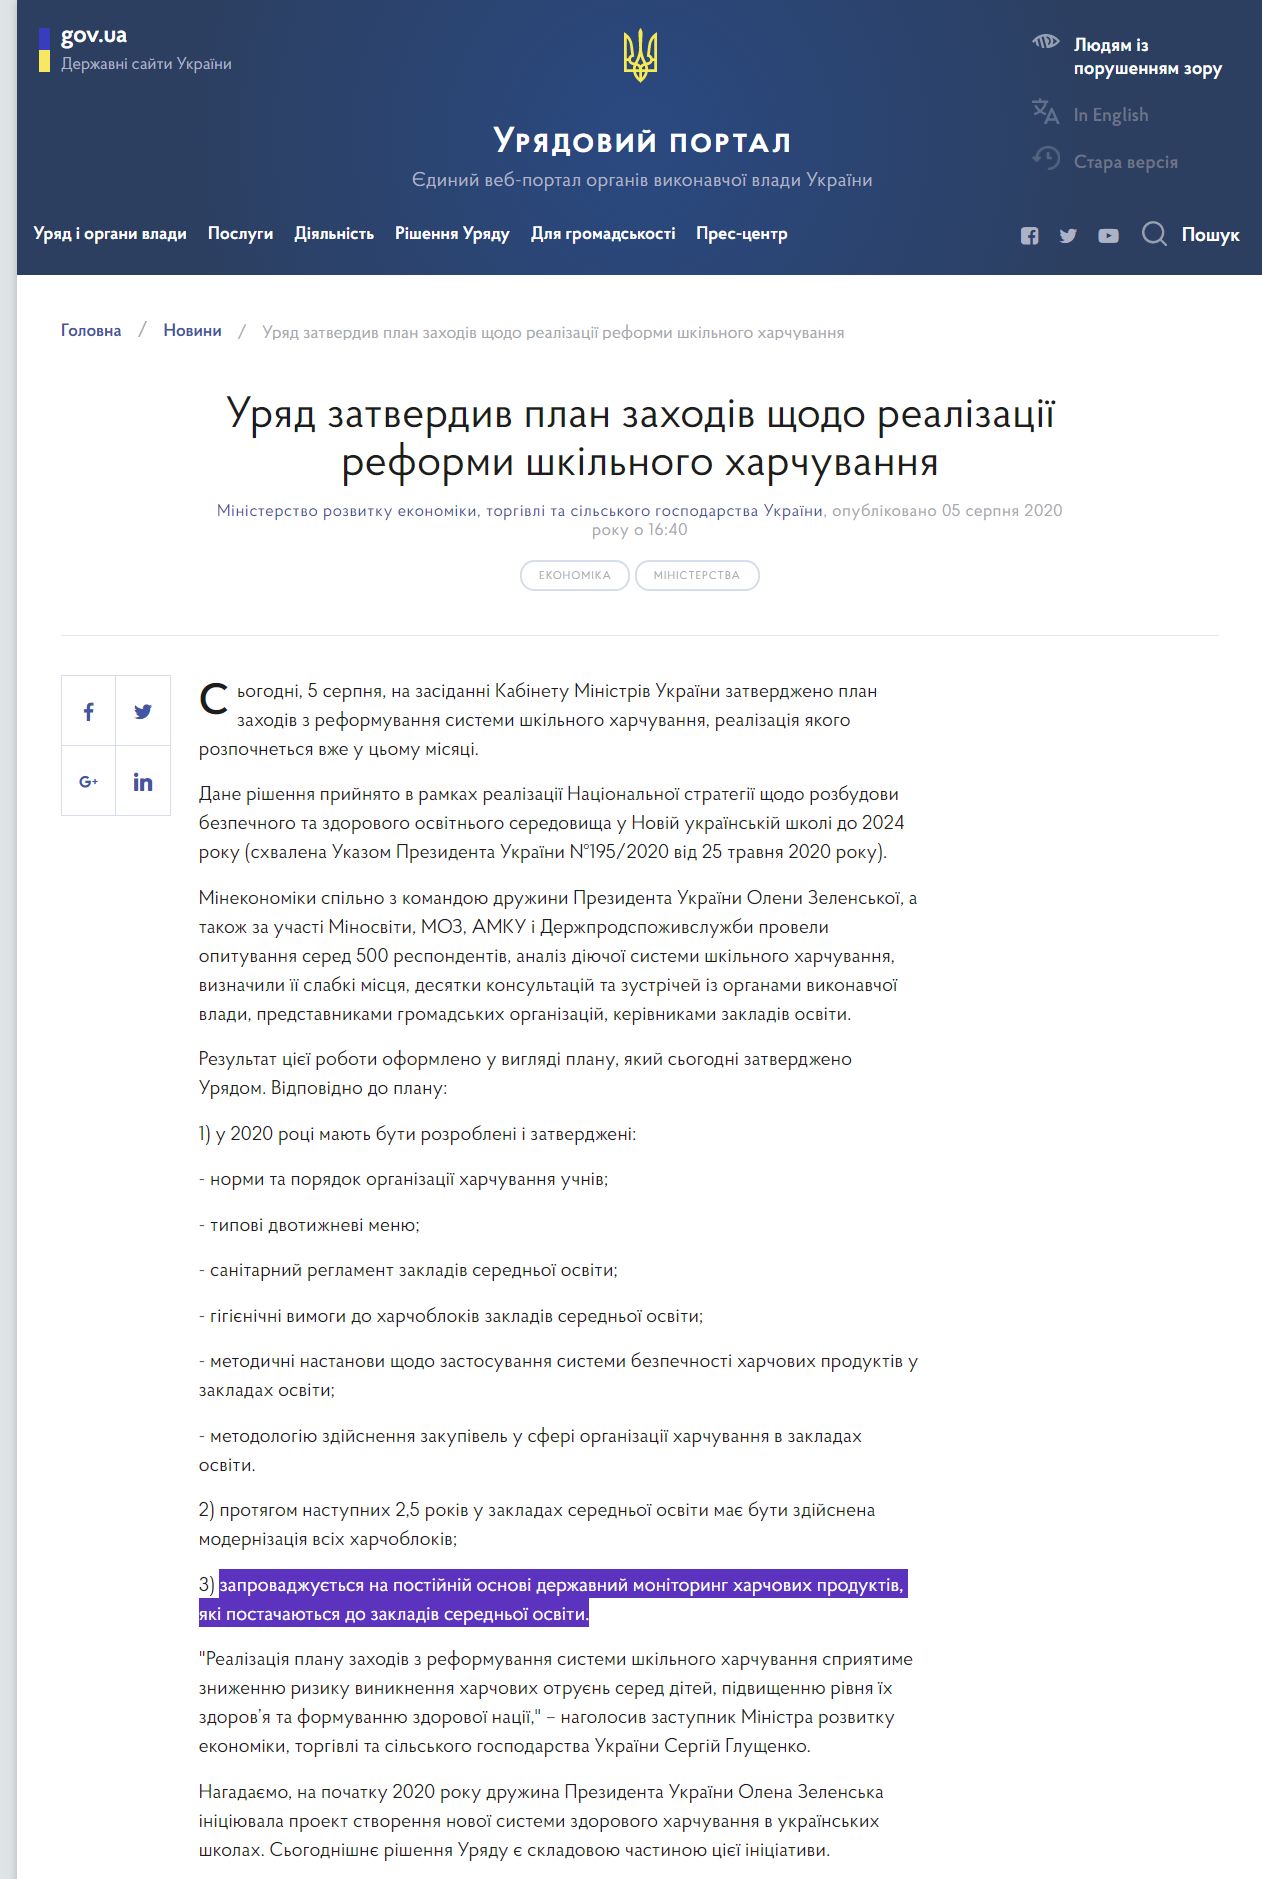 https://www.kmu.gov.ua/news/uryad-zatverdiv-plan-zahodiv-shchodo-realizaciyi-reformi-shkilnogo-harchuvannya